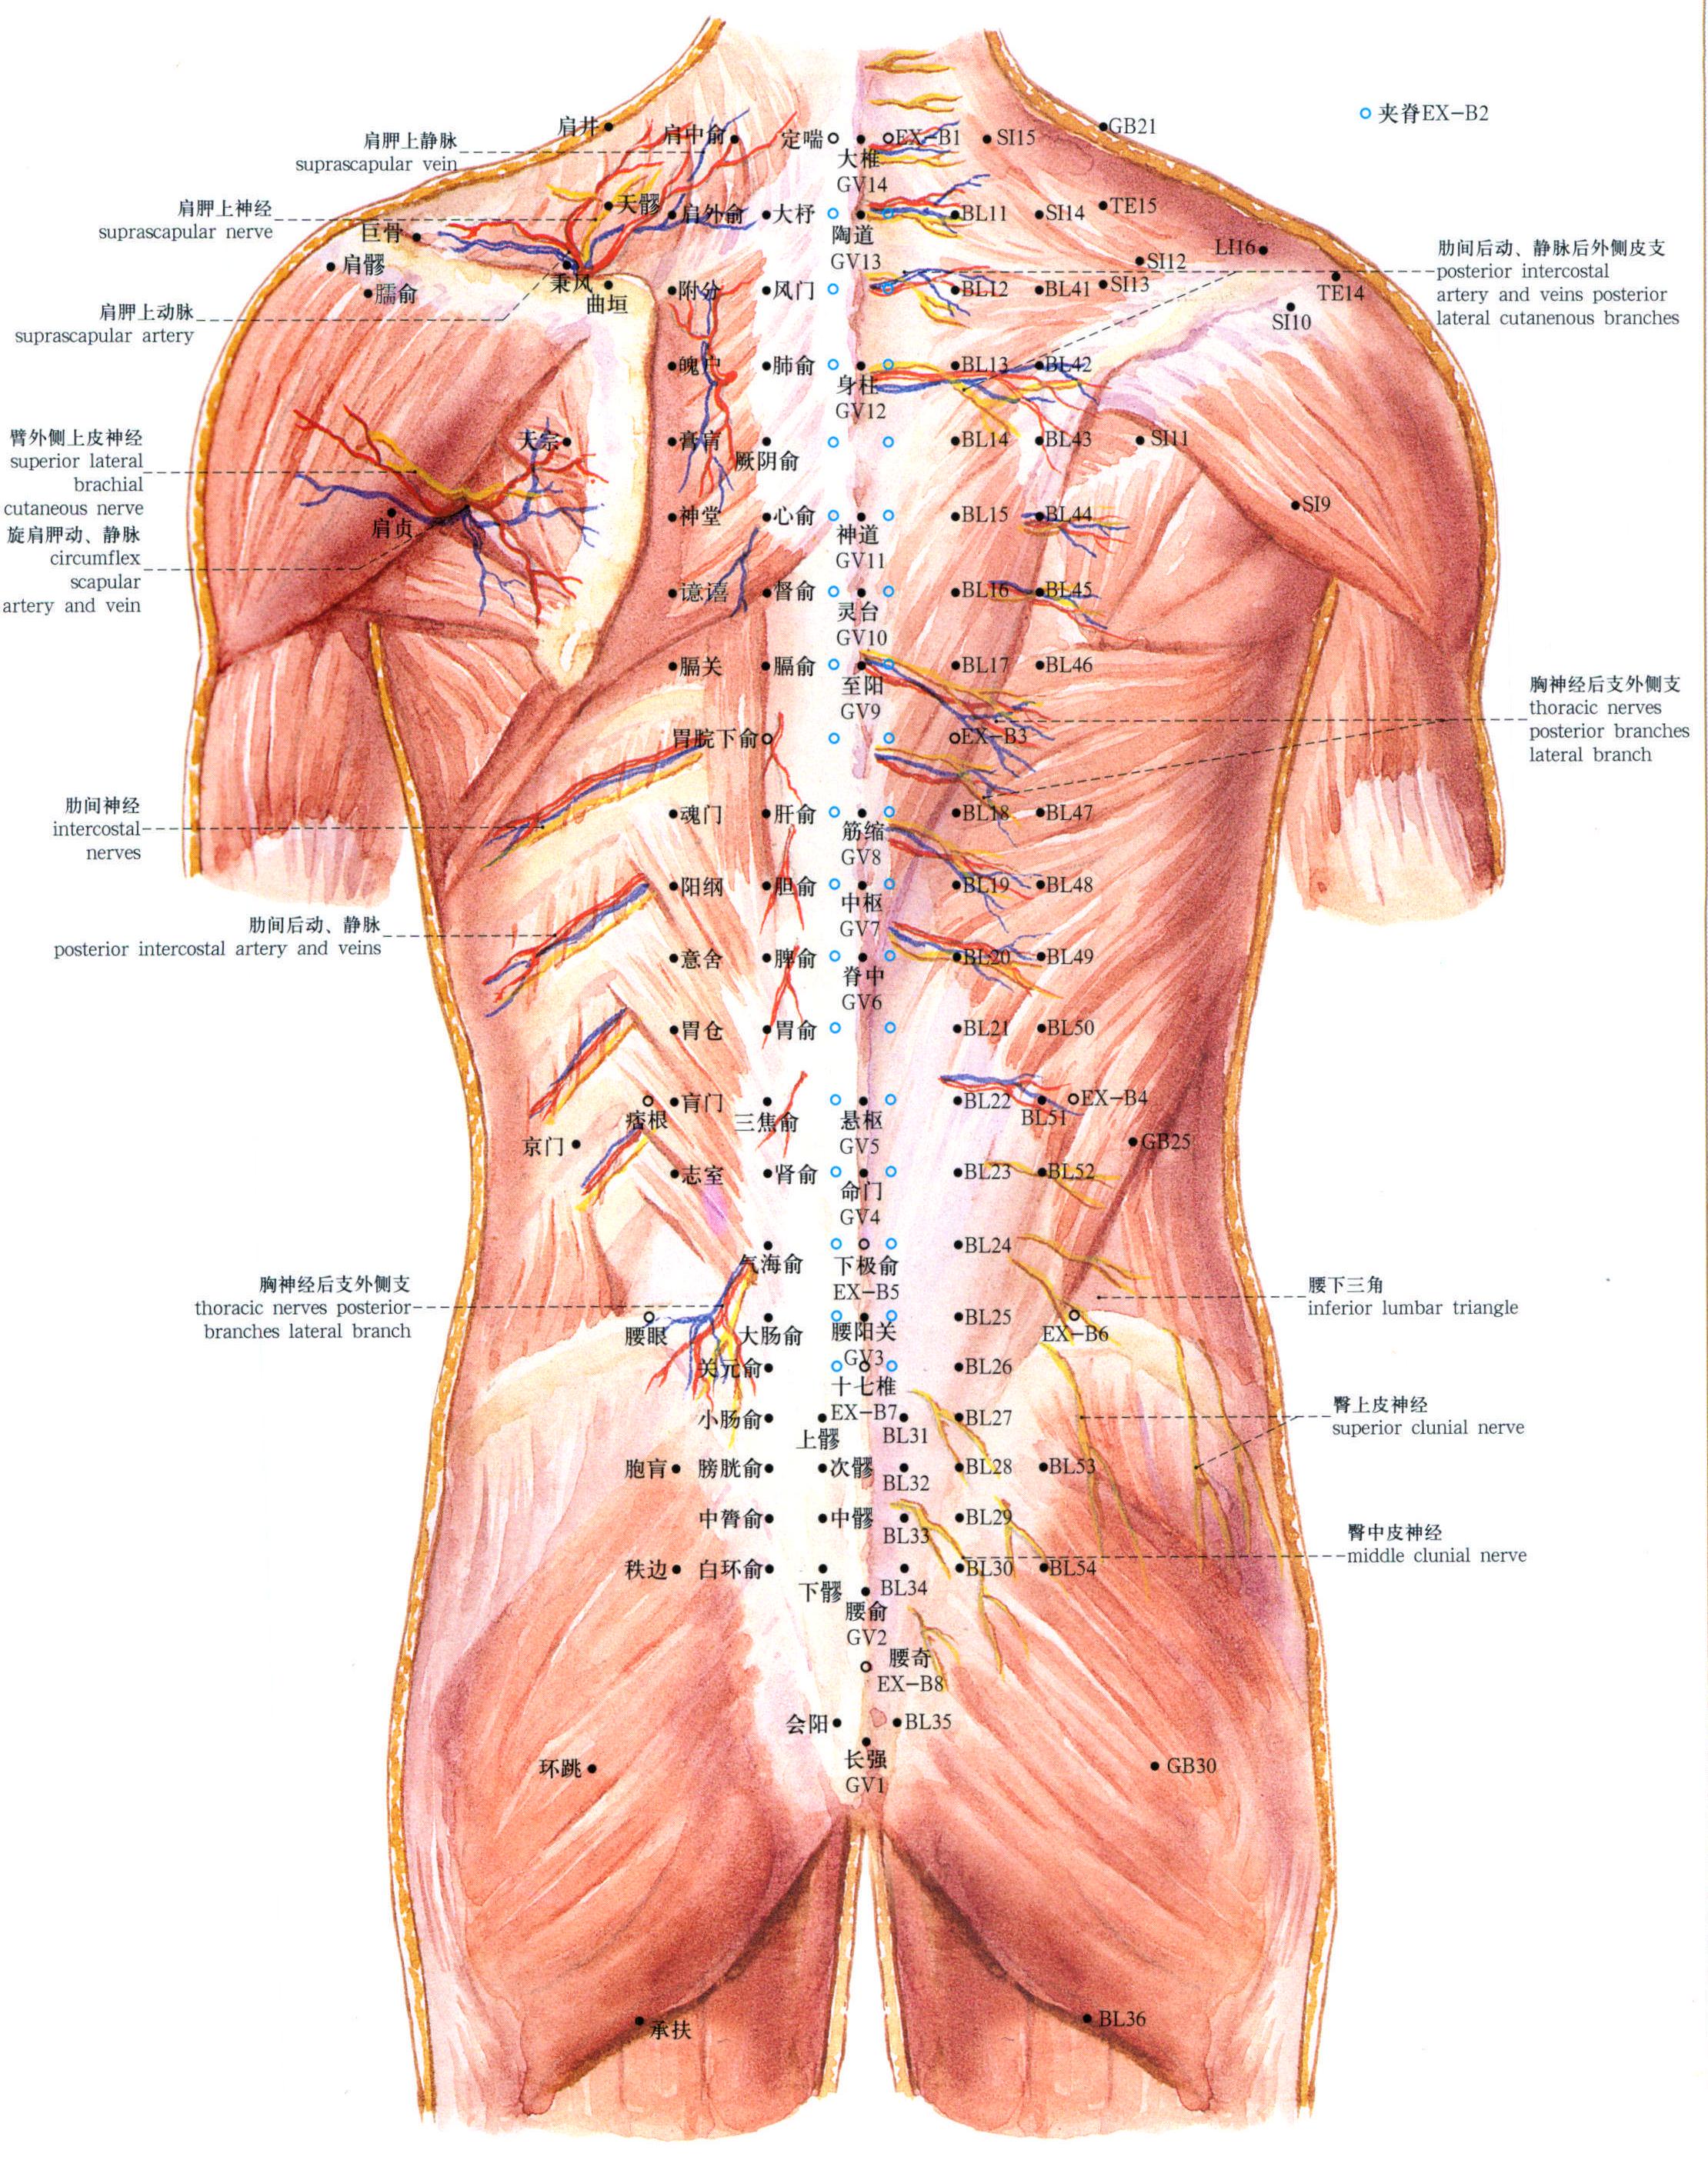 41. 躯干部的血管、神经与腧穴 (后面)